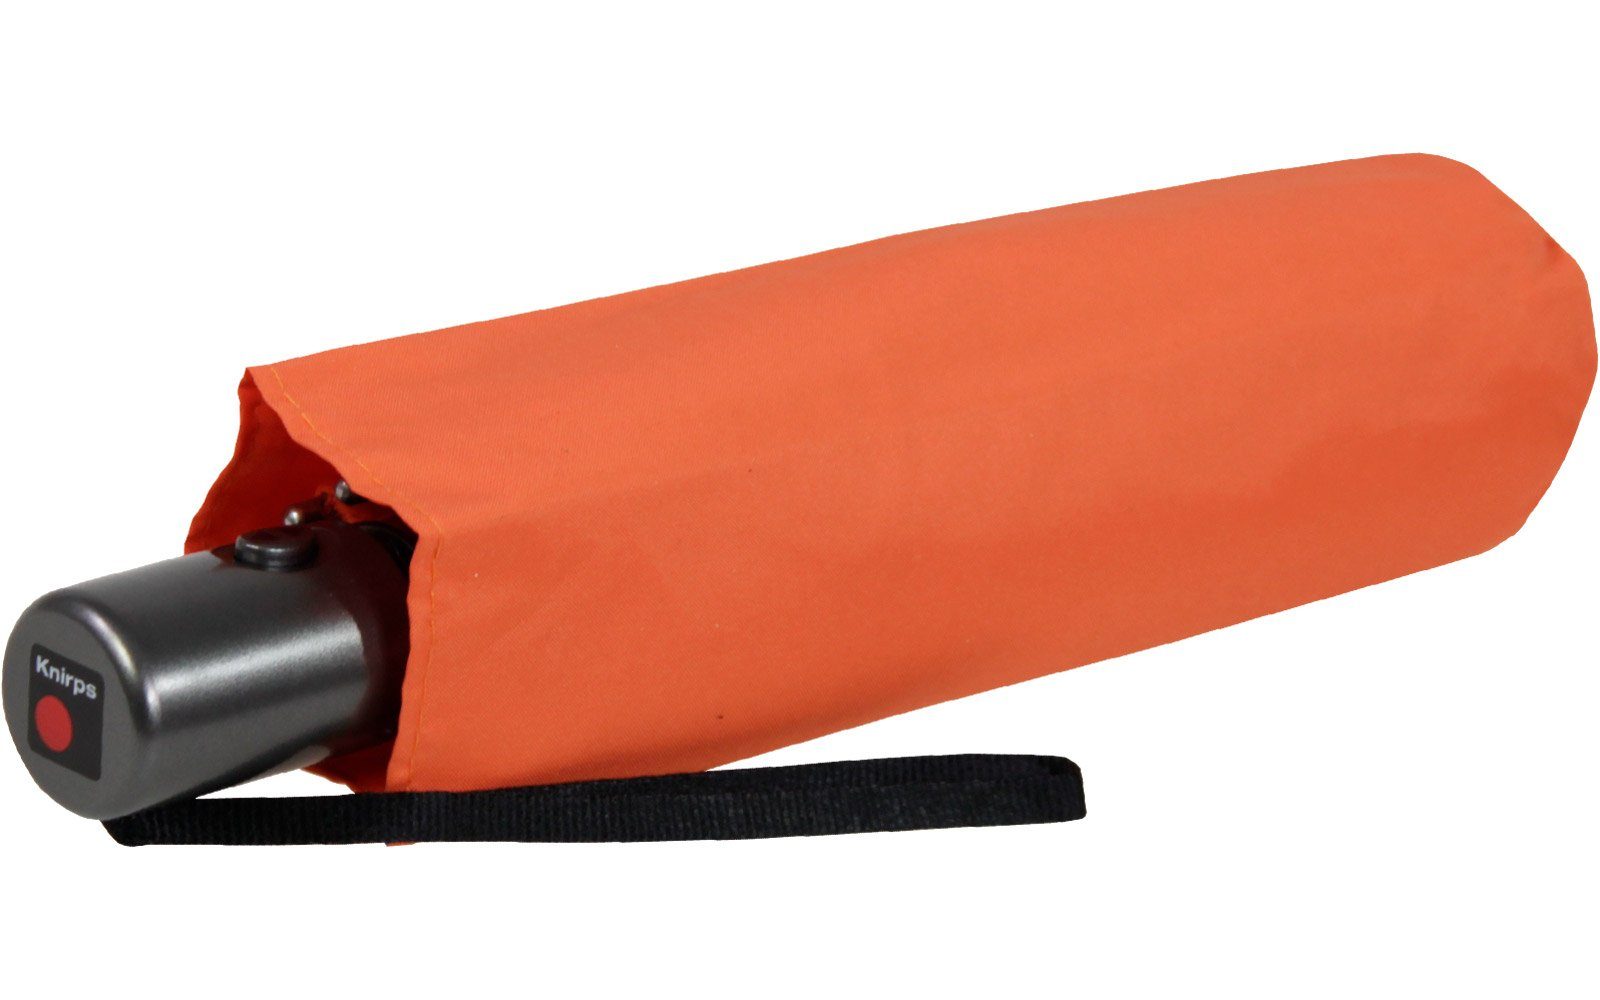 jede immer Tasche in klein und mit Duomatic Automatik, Taschenregenschirm orange Slim leicht passt Auf-Zu Knirps® dabei,